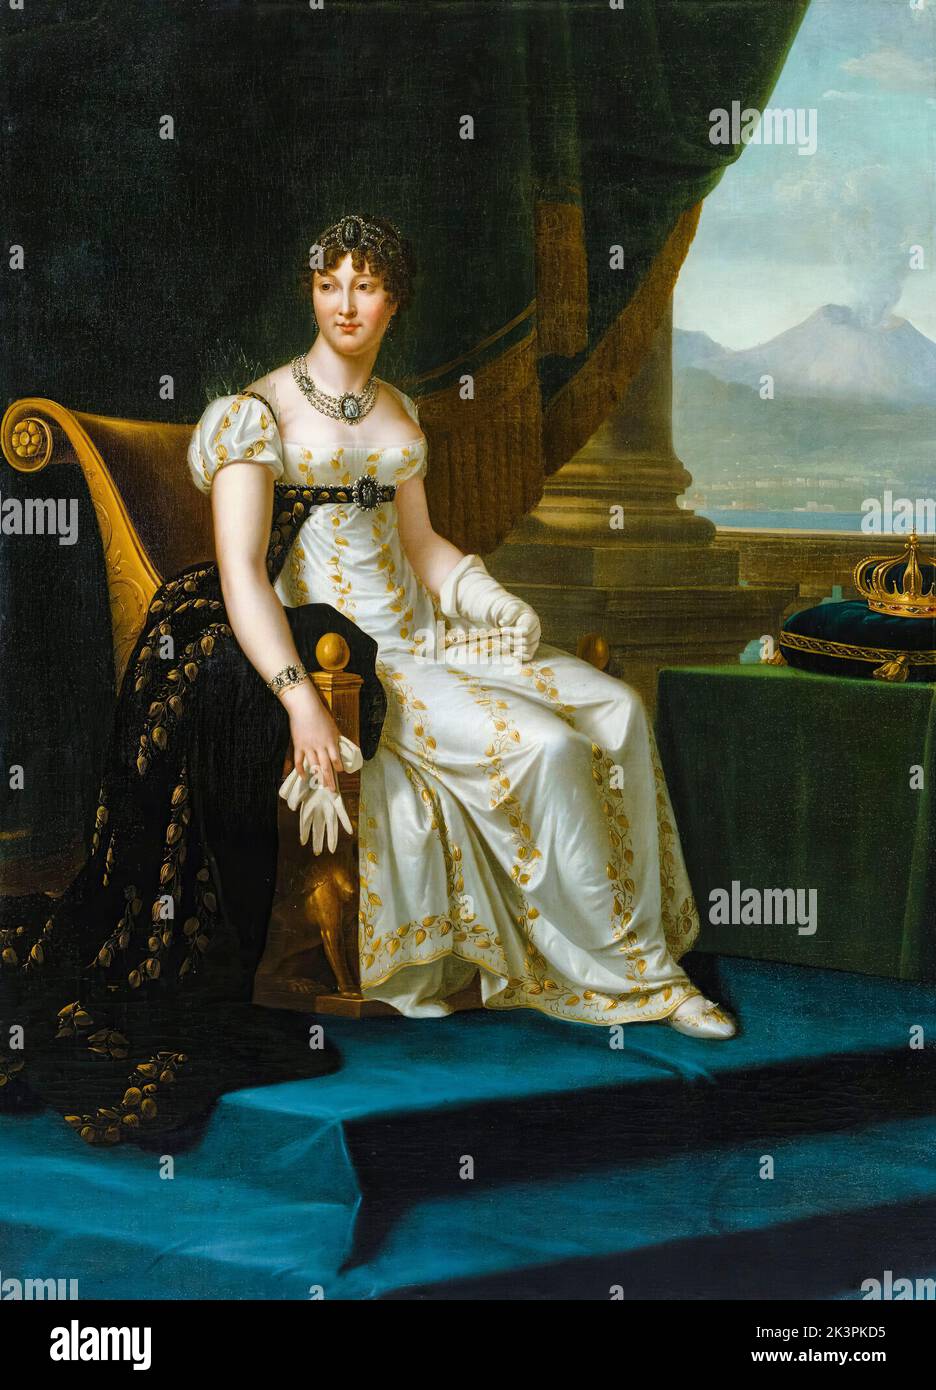 Caroline Bonaparte (Caroline Murat), (1782-1839), Königin Consort von Neapel und die beiden Sizilien, Porträt in Öl auf Leinwand durch den Kreis von François Gérard, 1810-1812 Stockfoto